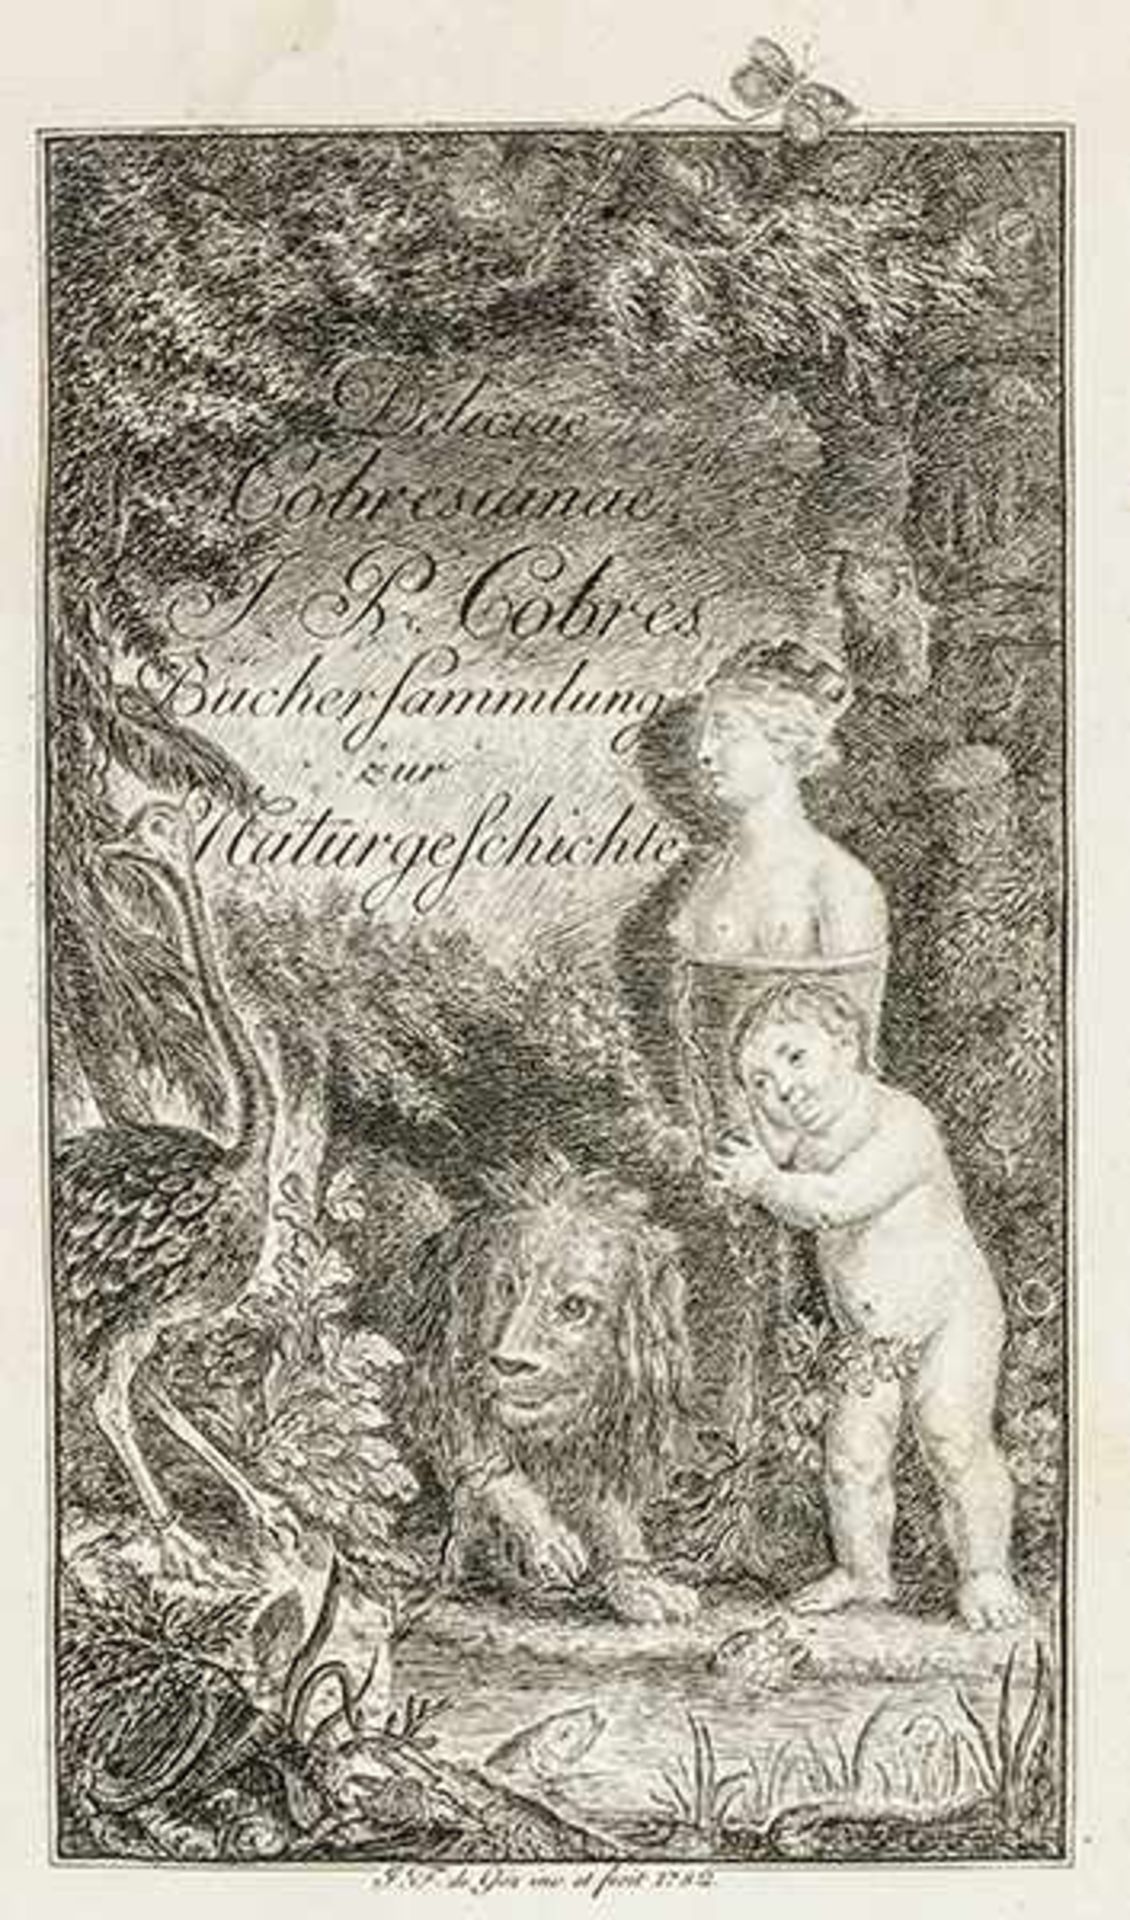 Allgemein - - Cobres, Joseph Paul von. Deliciae Cobresianae. Büchersammlung zur Naturgeschichte. 2